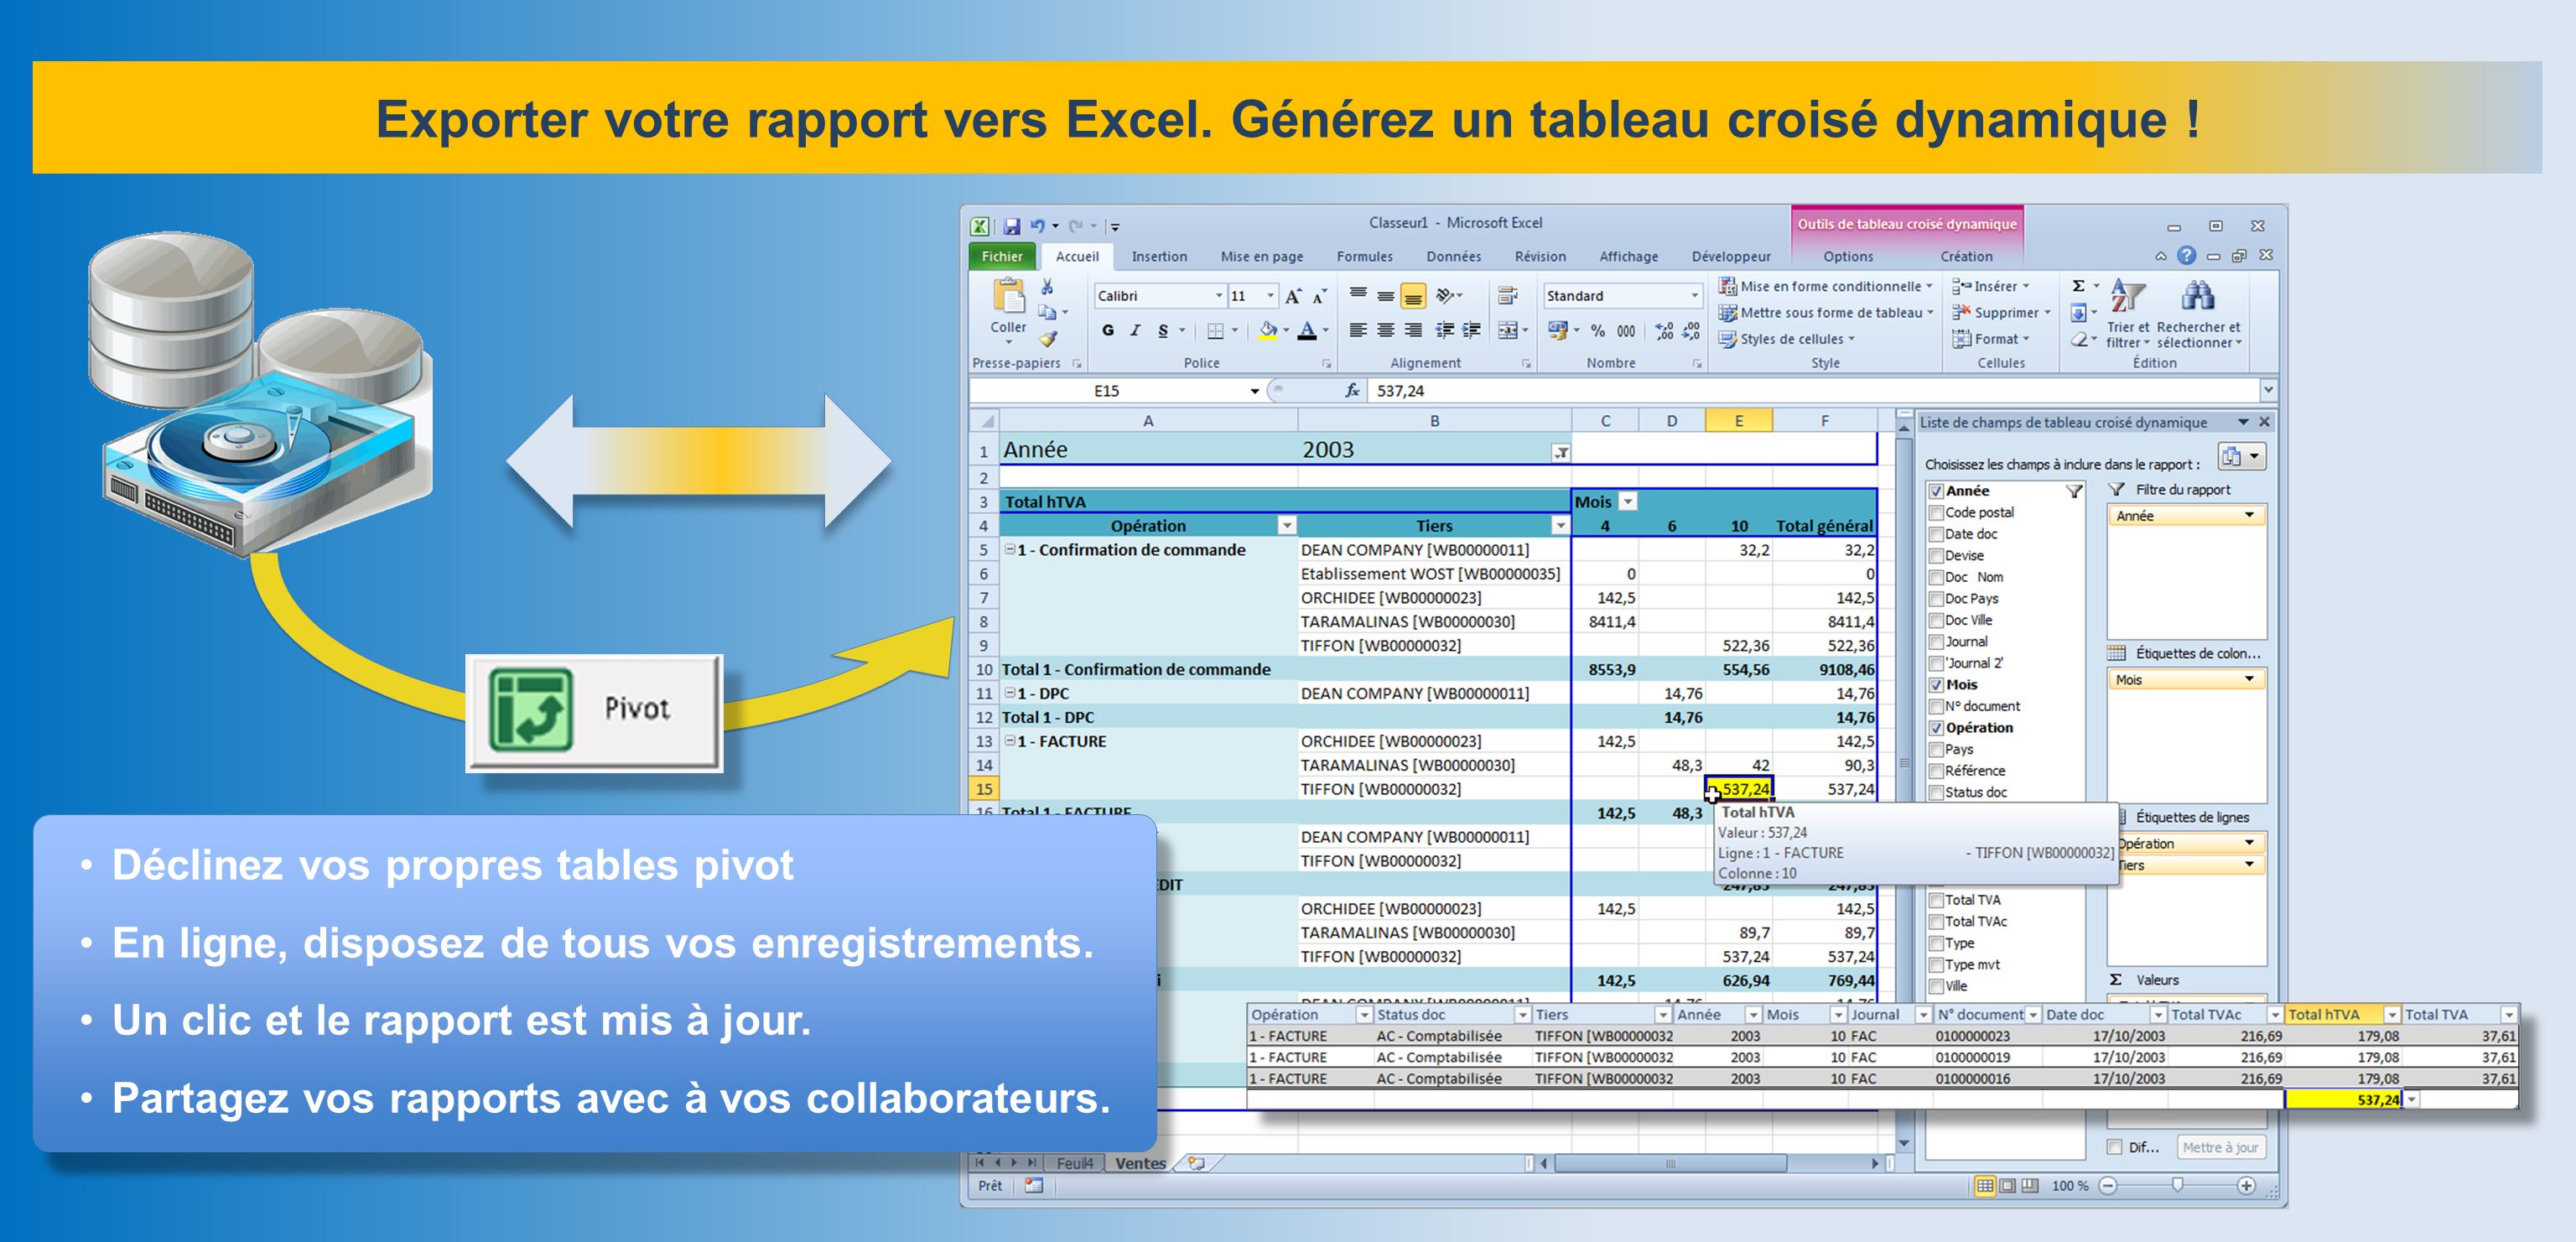 Exporter votre rapport vers Excel. Générez un tableau croisé dynamique .